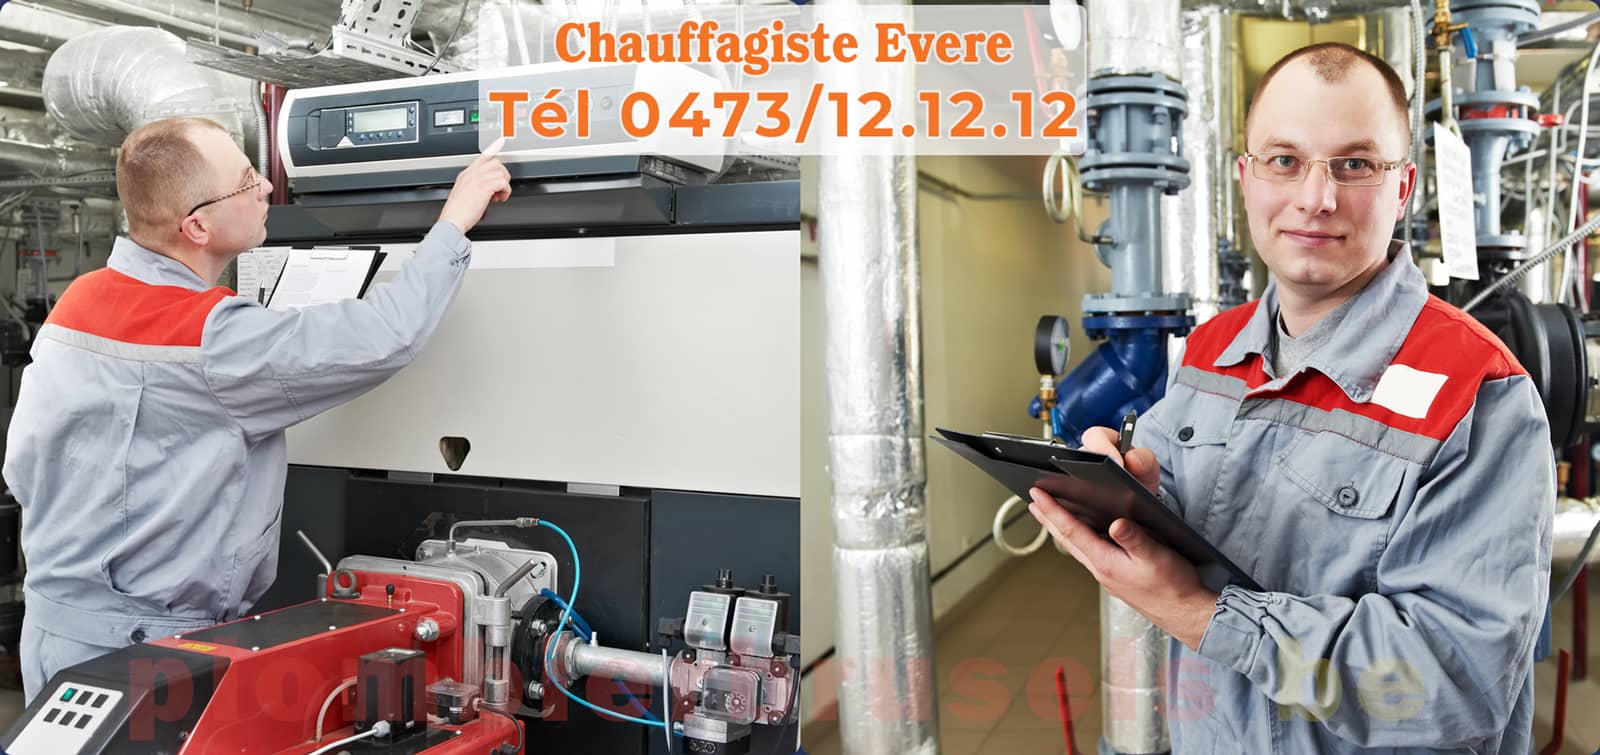 Chauffagiste Evere service de Chauffage tél 0473/12.12.12